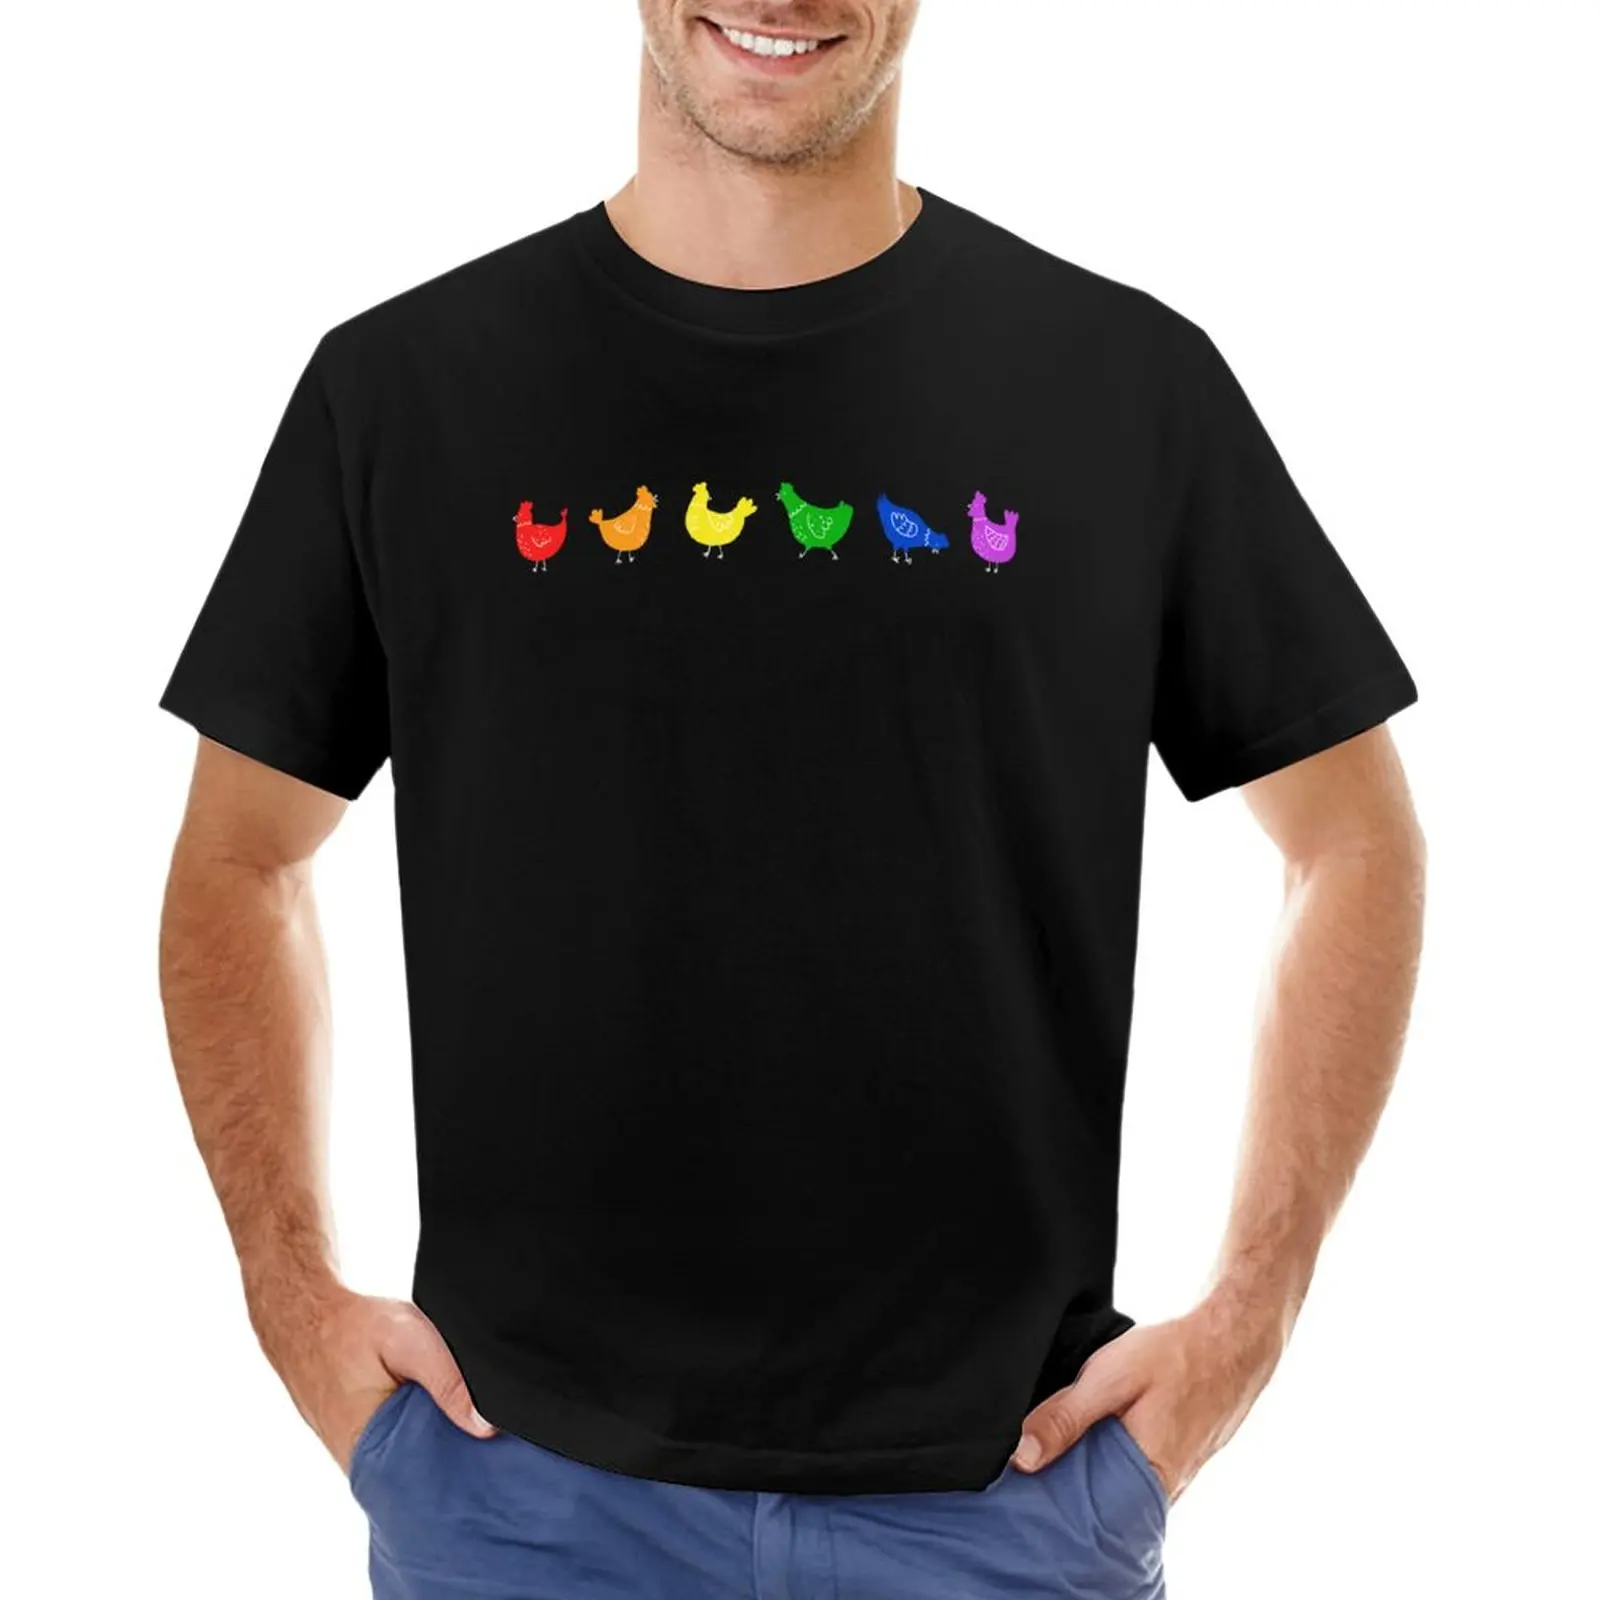 

Футболка с радужным иллюстрационным изображением фермера, цыплят, на заказ, футболка, простая футболка для мальчиков, белые футболки, мужские футболки с графическим рисунком